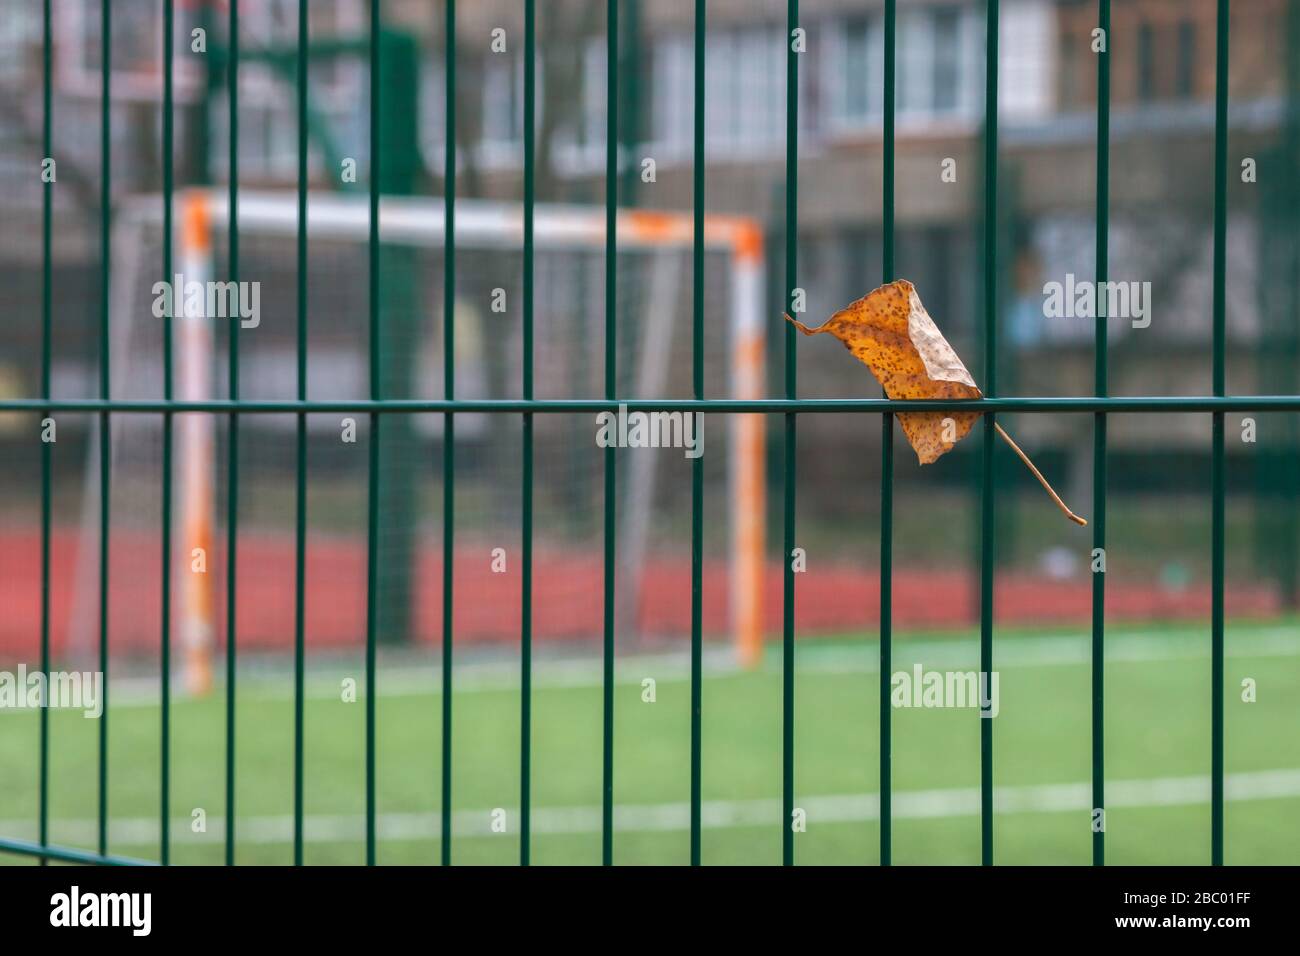 Feuille d'automne coincée dans la clôture sur fond d'un terrain de sport. Arrière-plan en flou. Banque D'Images